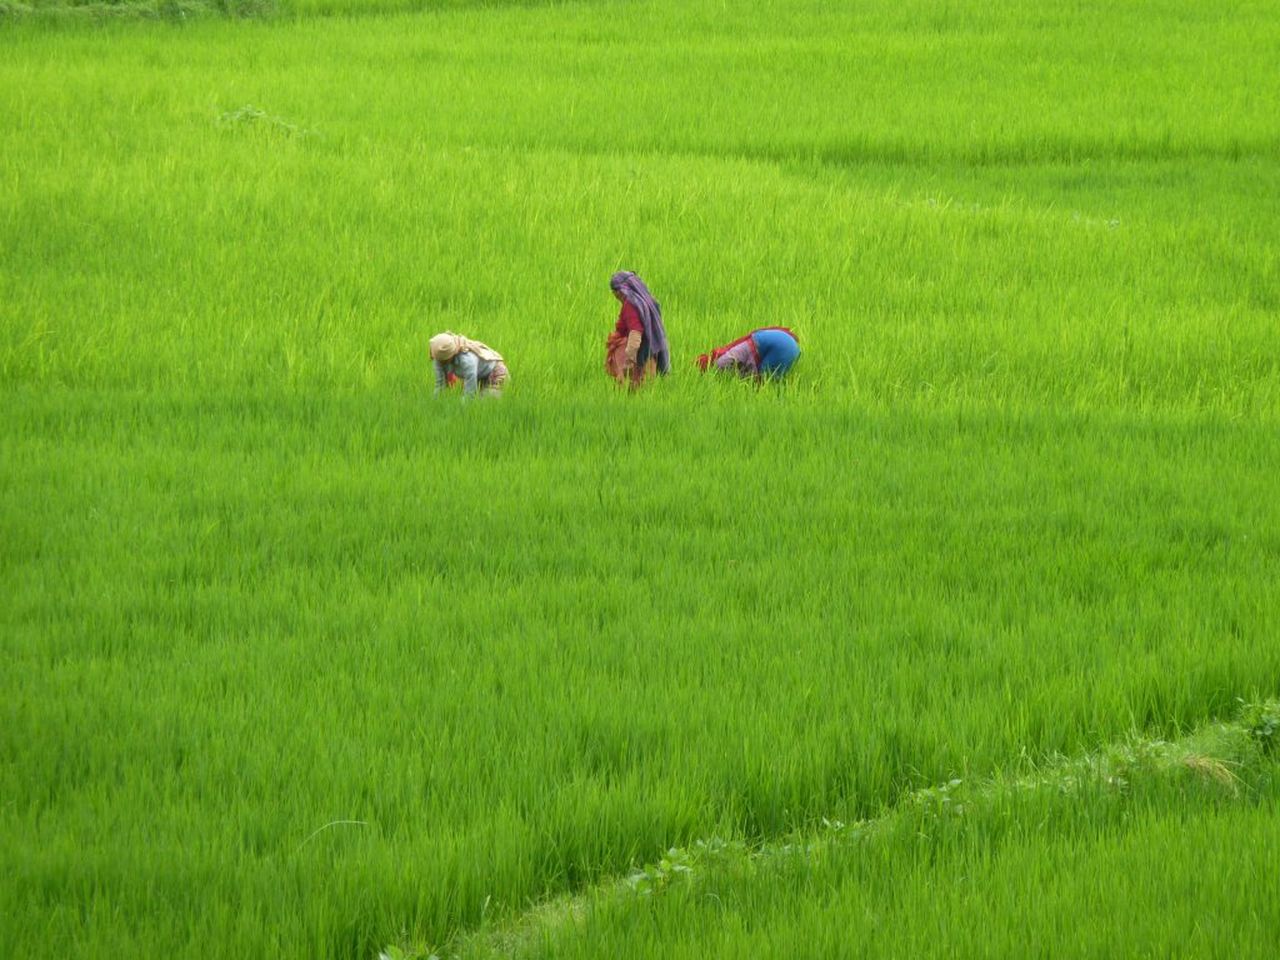 Путешествие по рисовым полям Непала на 3 дня | Цена 165$, отзывы, описание экскурсии